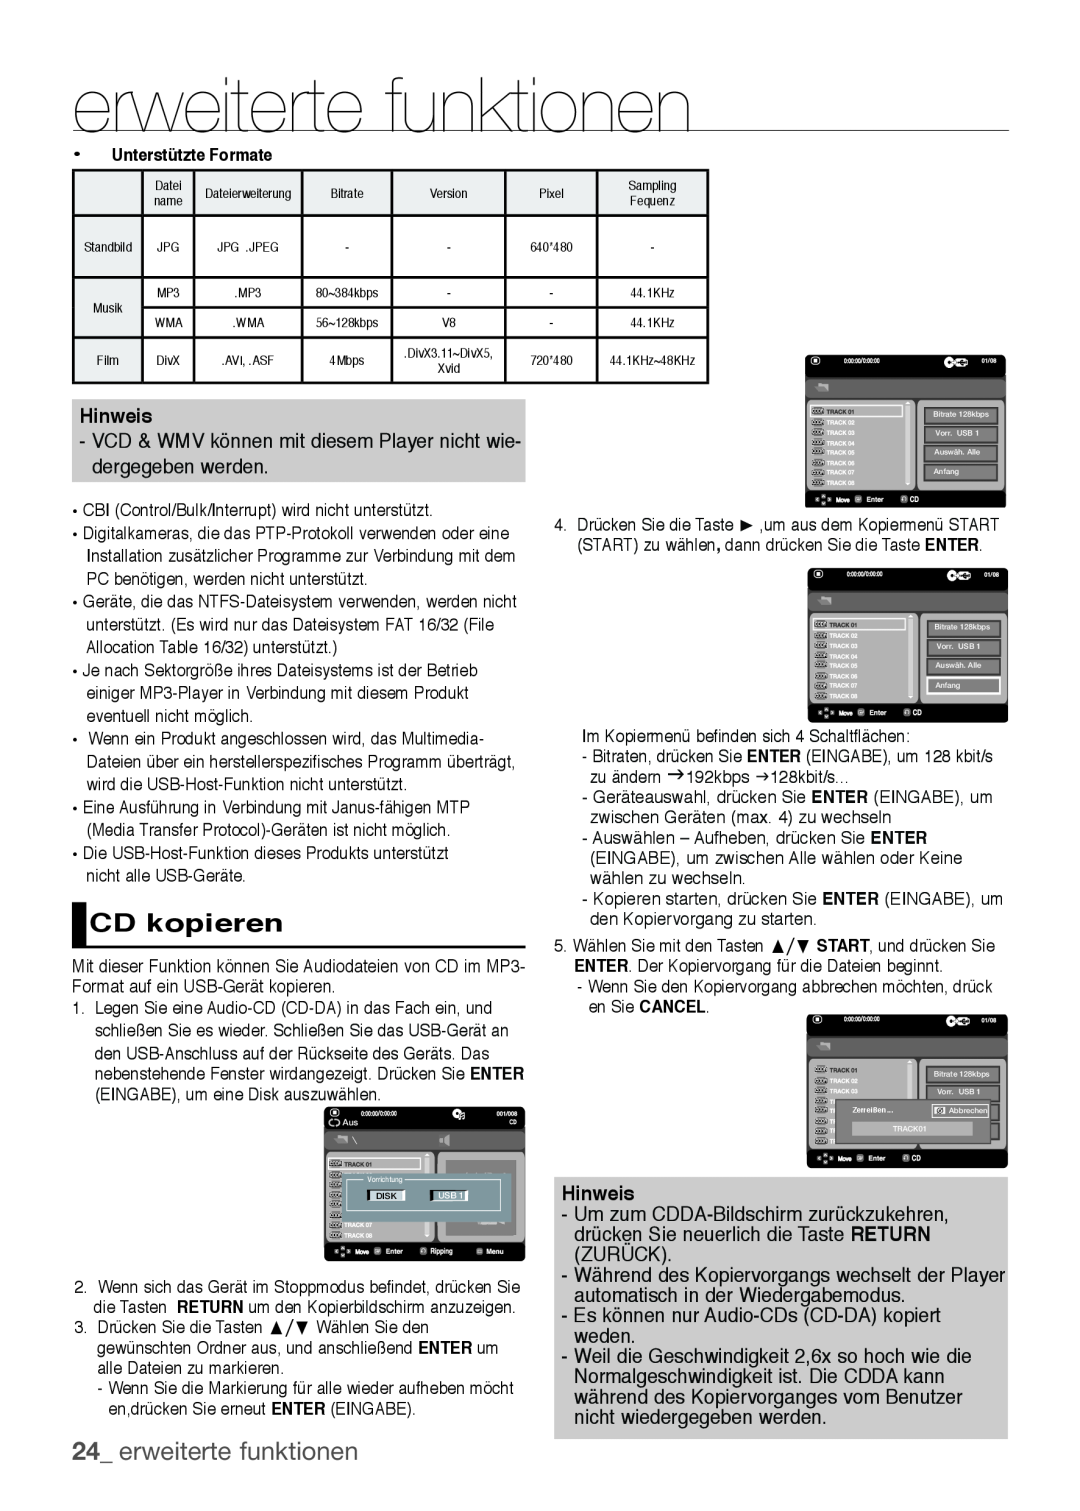 Samsung DVD-H1080/EDC manual CD kopieren, erweiterte funktionen, Hinweis - Um zum CDDA-Bildschirm zurückzukehren 